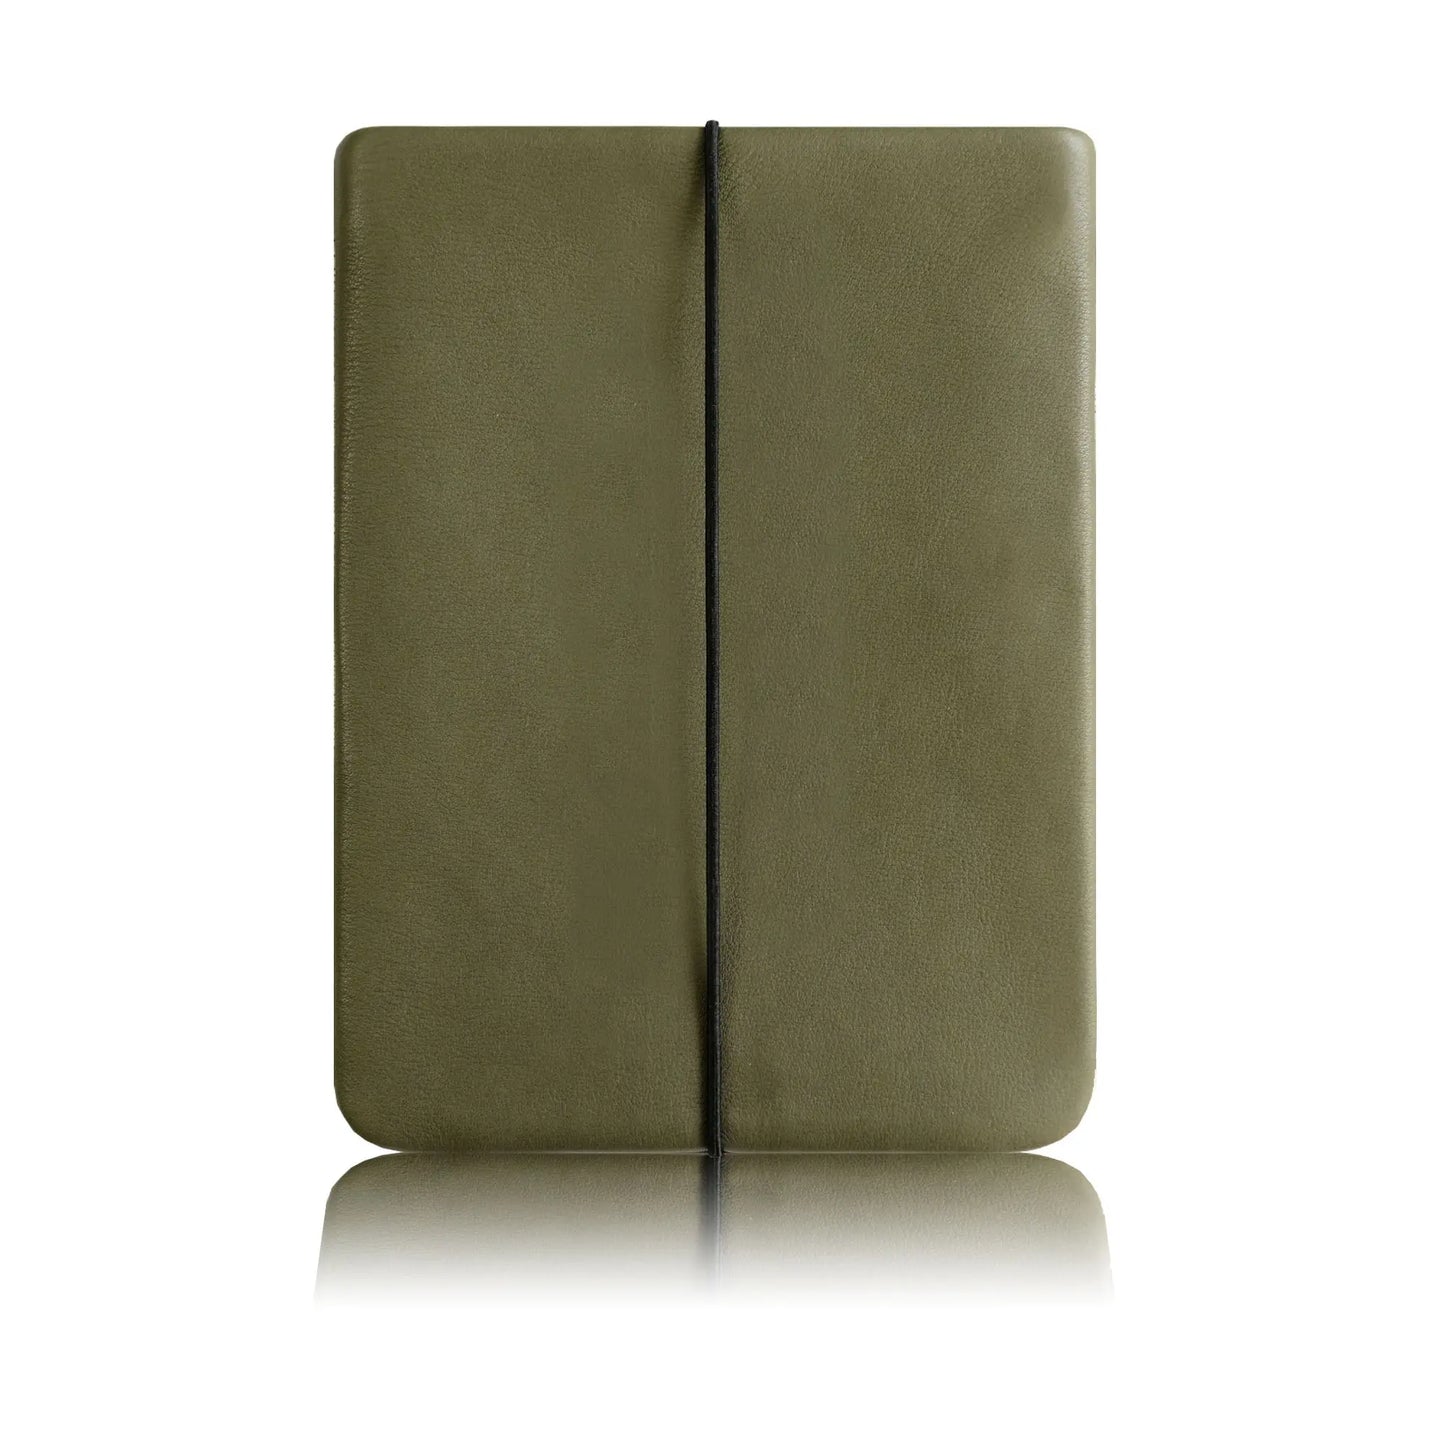 khakigrüne iPad Hülle aus echtem Rindsleder mit einer schwarzen Verschlusskordel